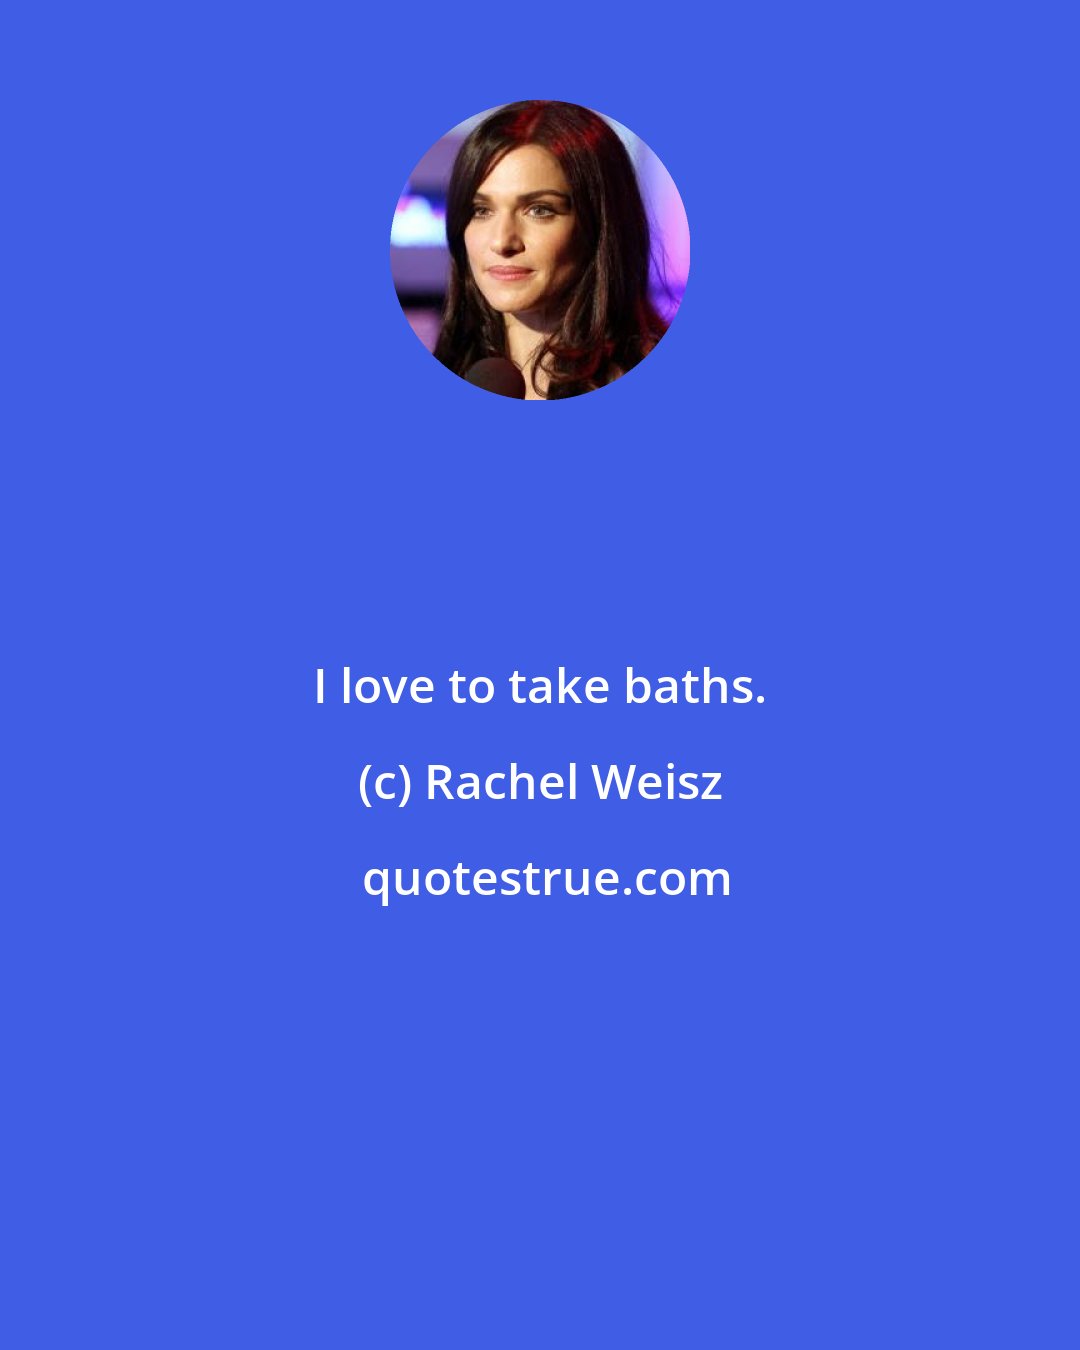 Rachel Weisz: I love to take baths.